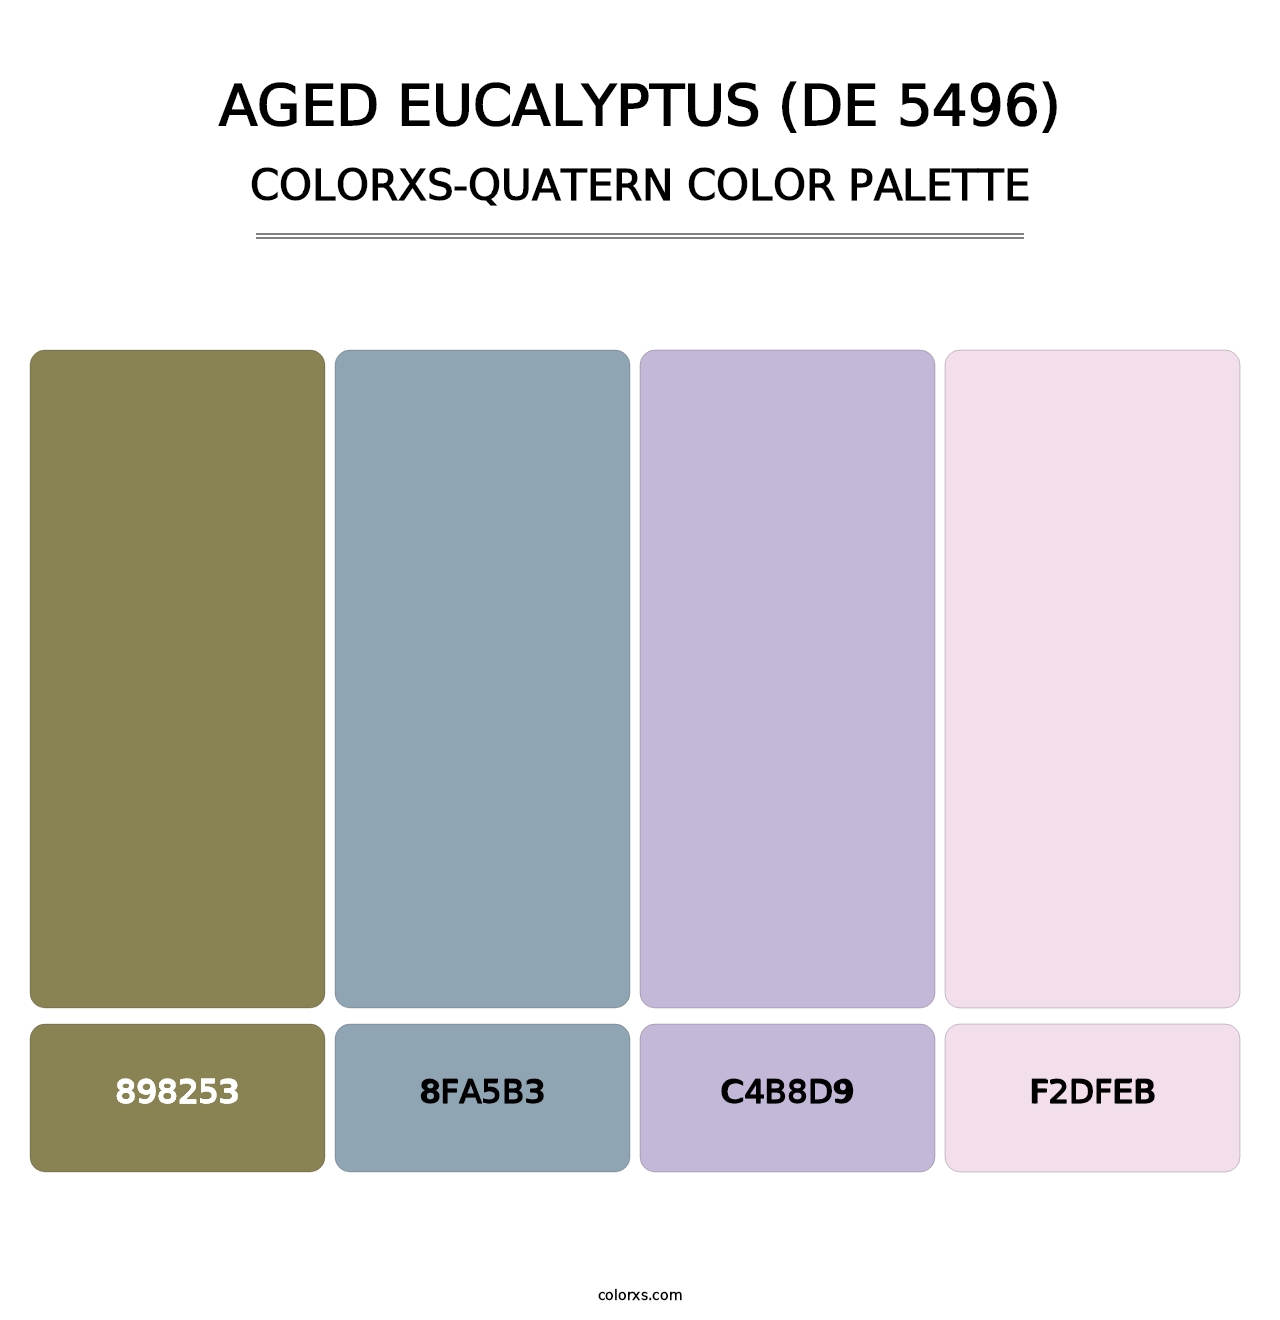 Aged Eucalyptus (DE 5496) - Colorxs Quatern Palette